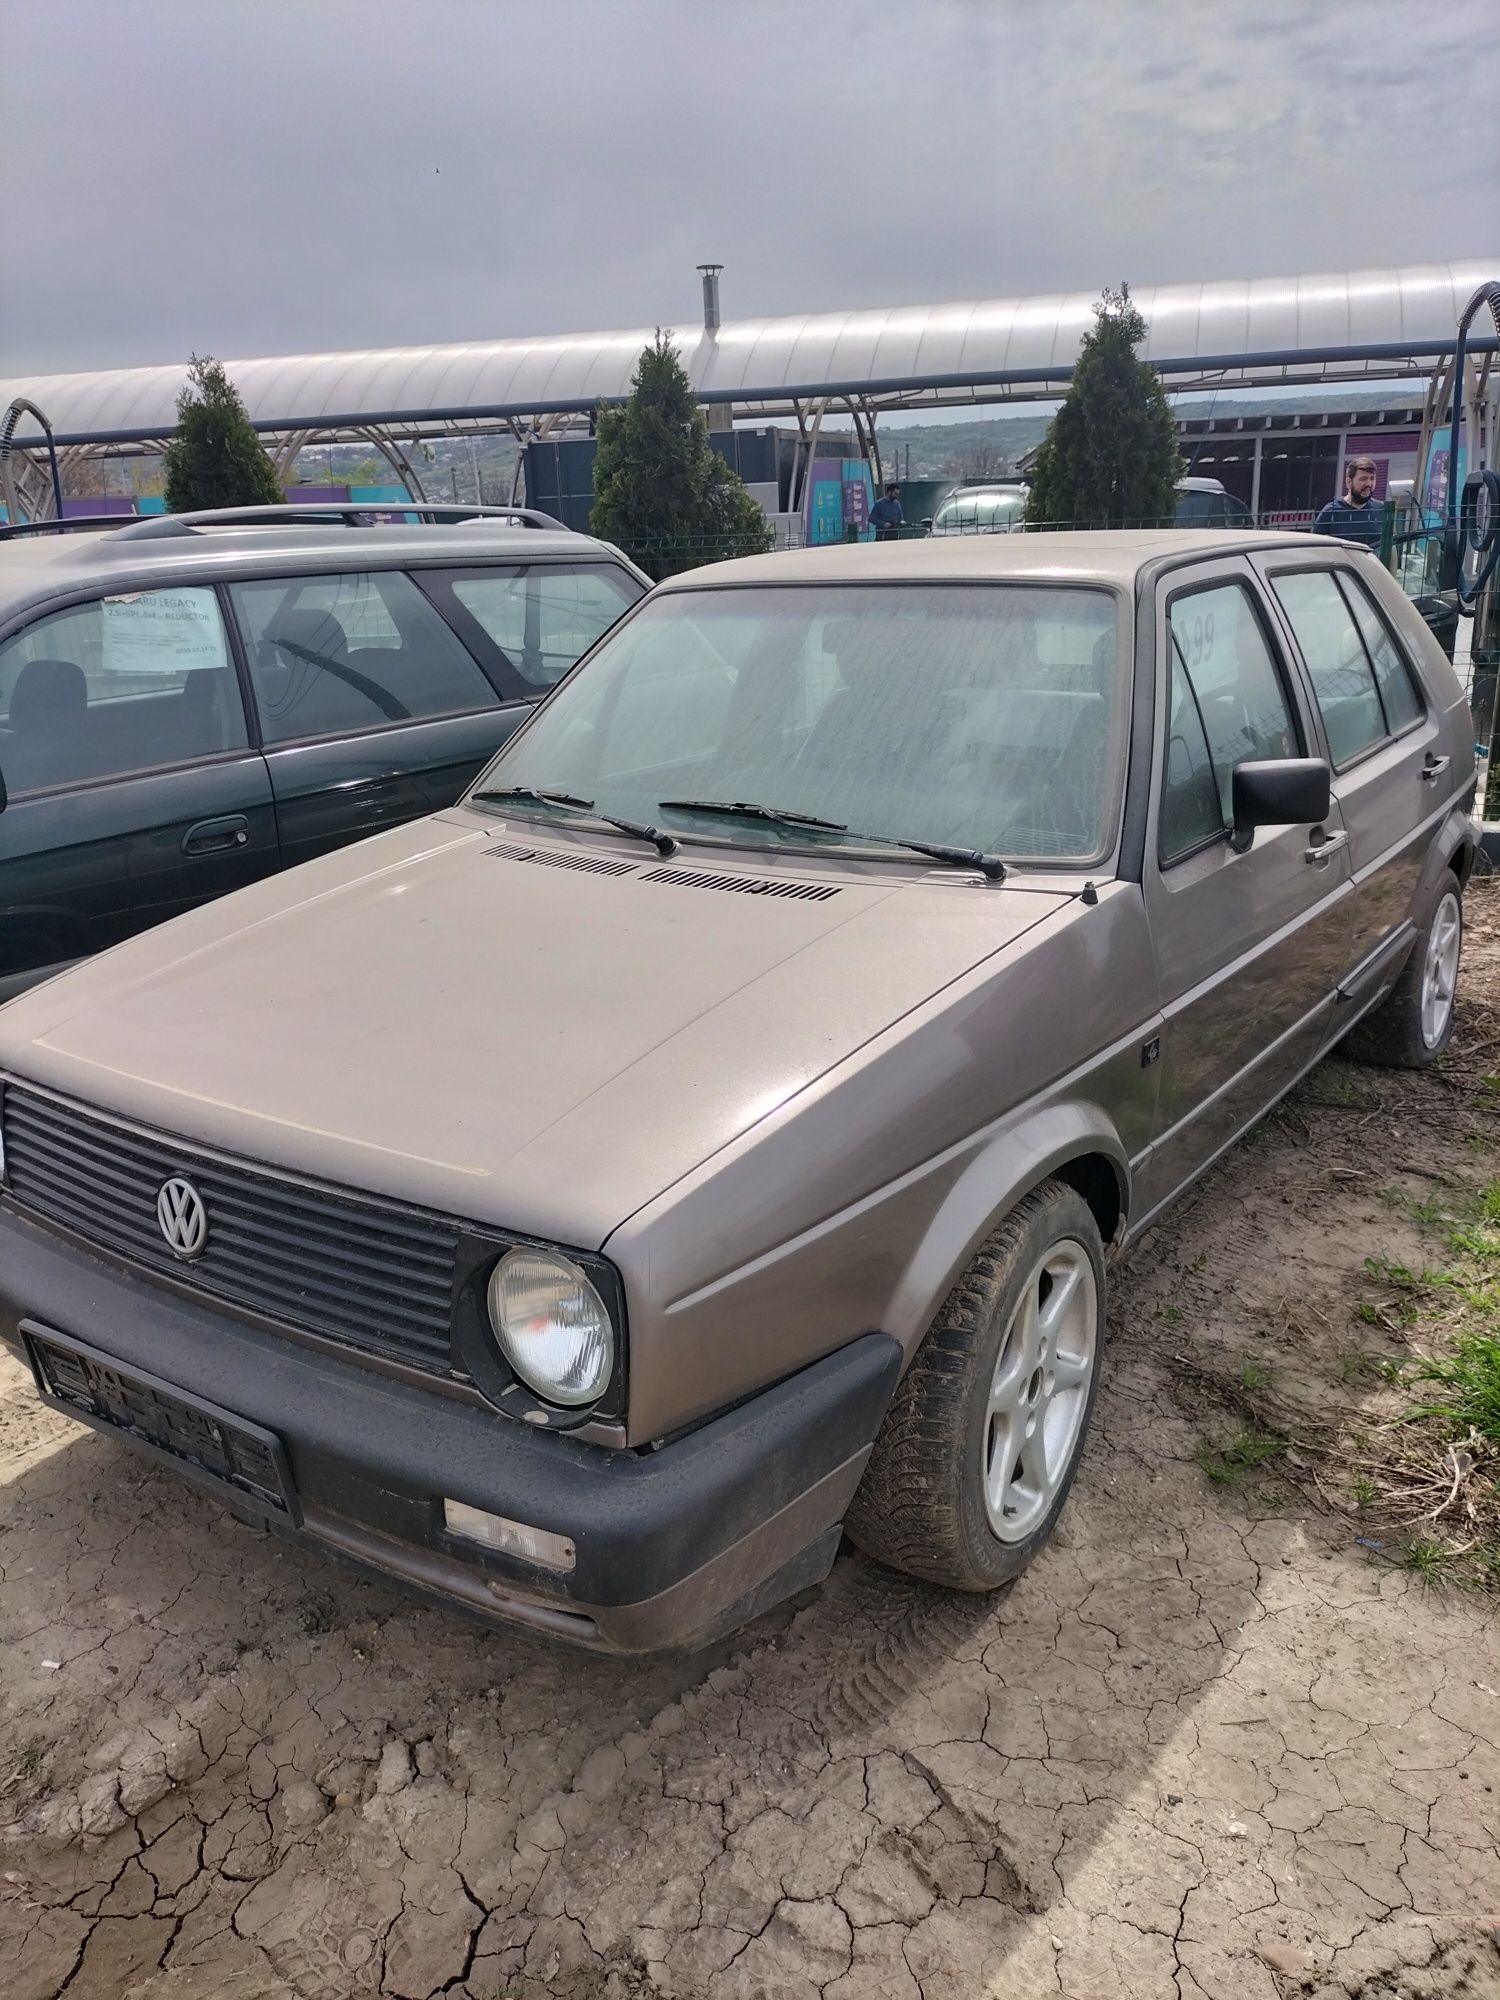 VW Golf 2 '86, fără rugină, cumpărat de la Austriac de 98ani din garaj